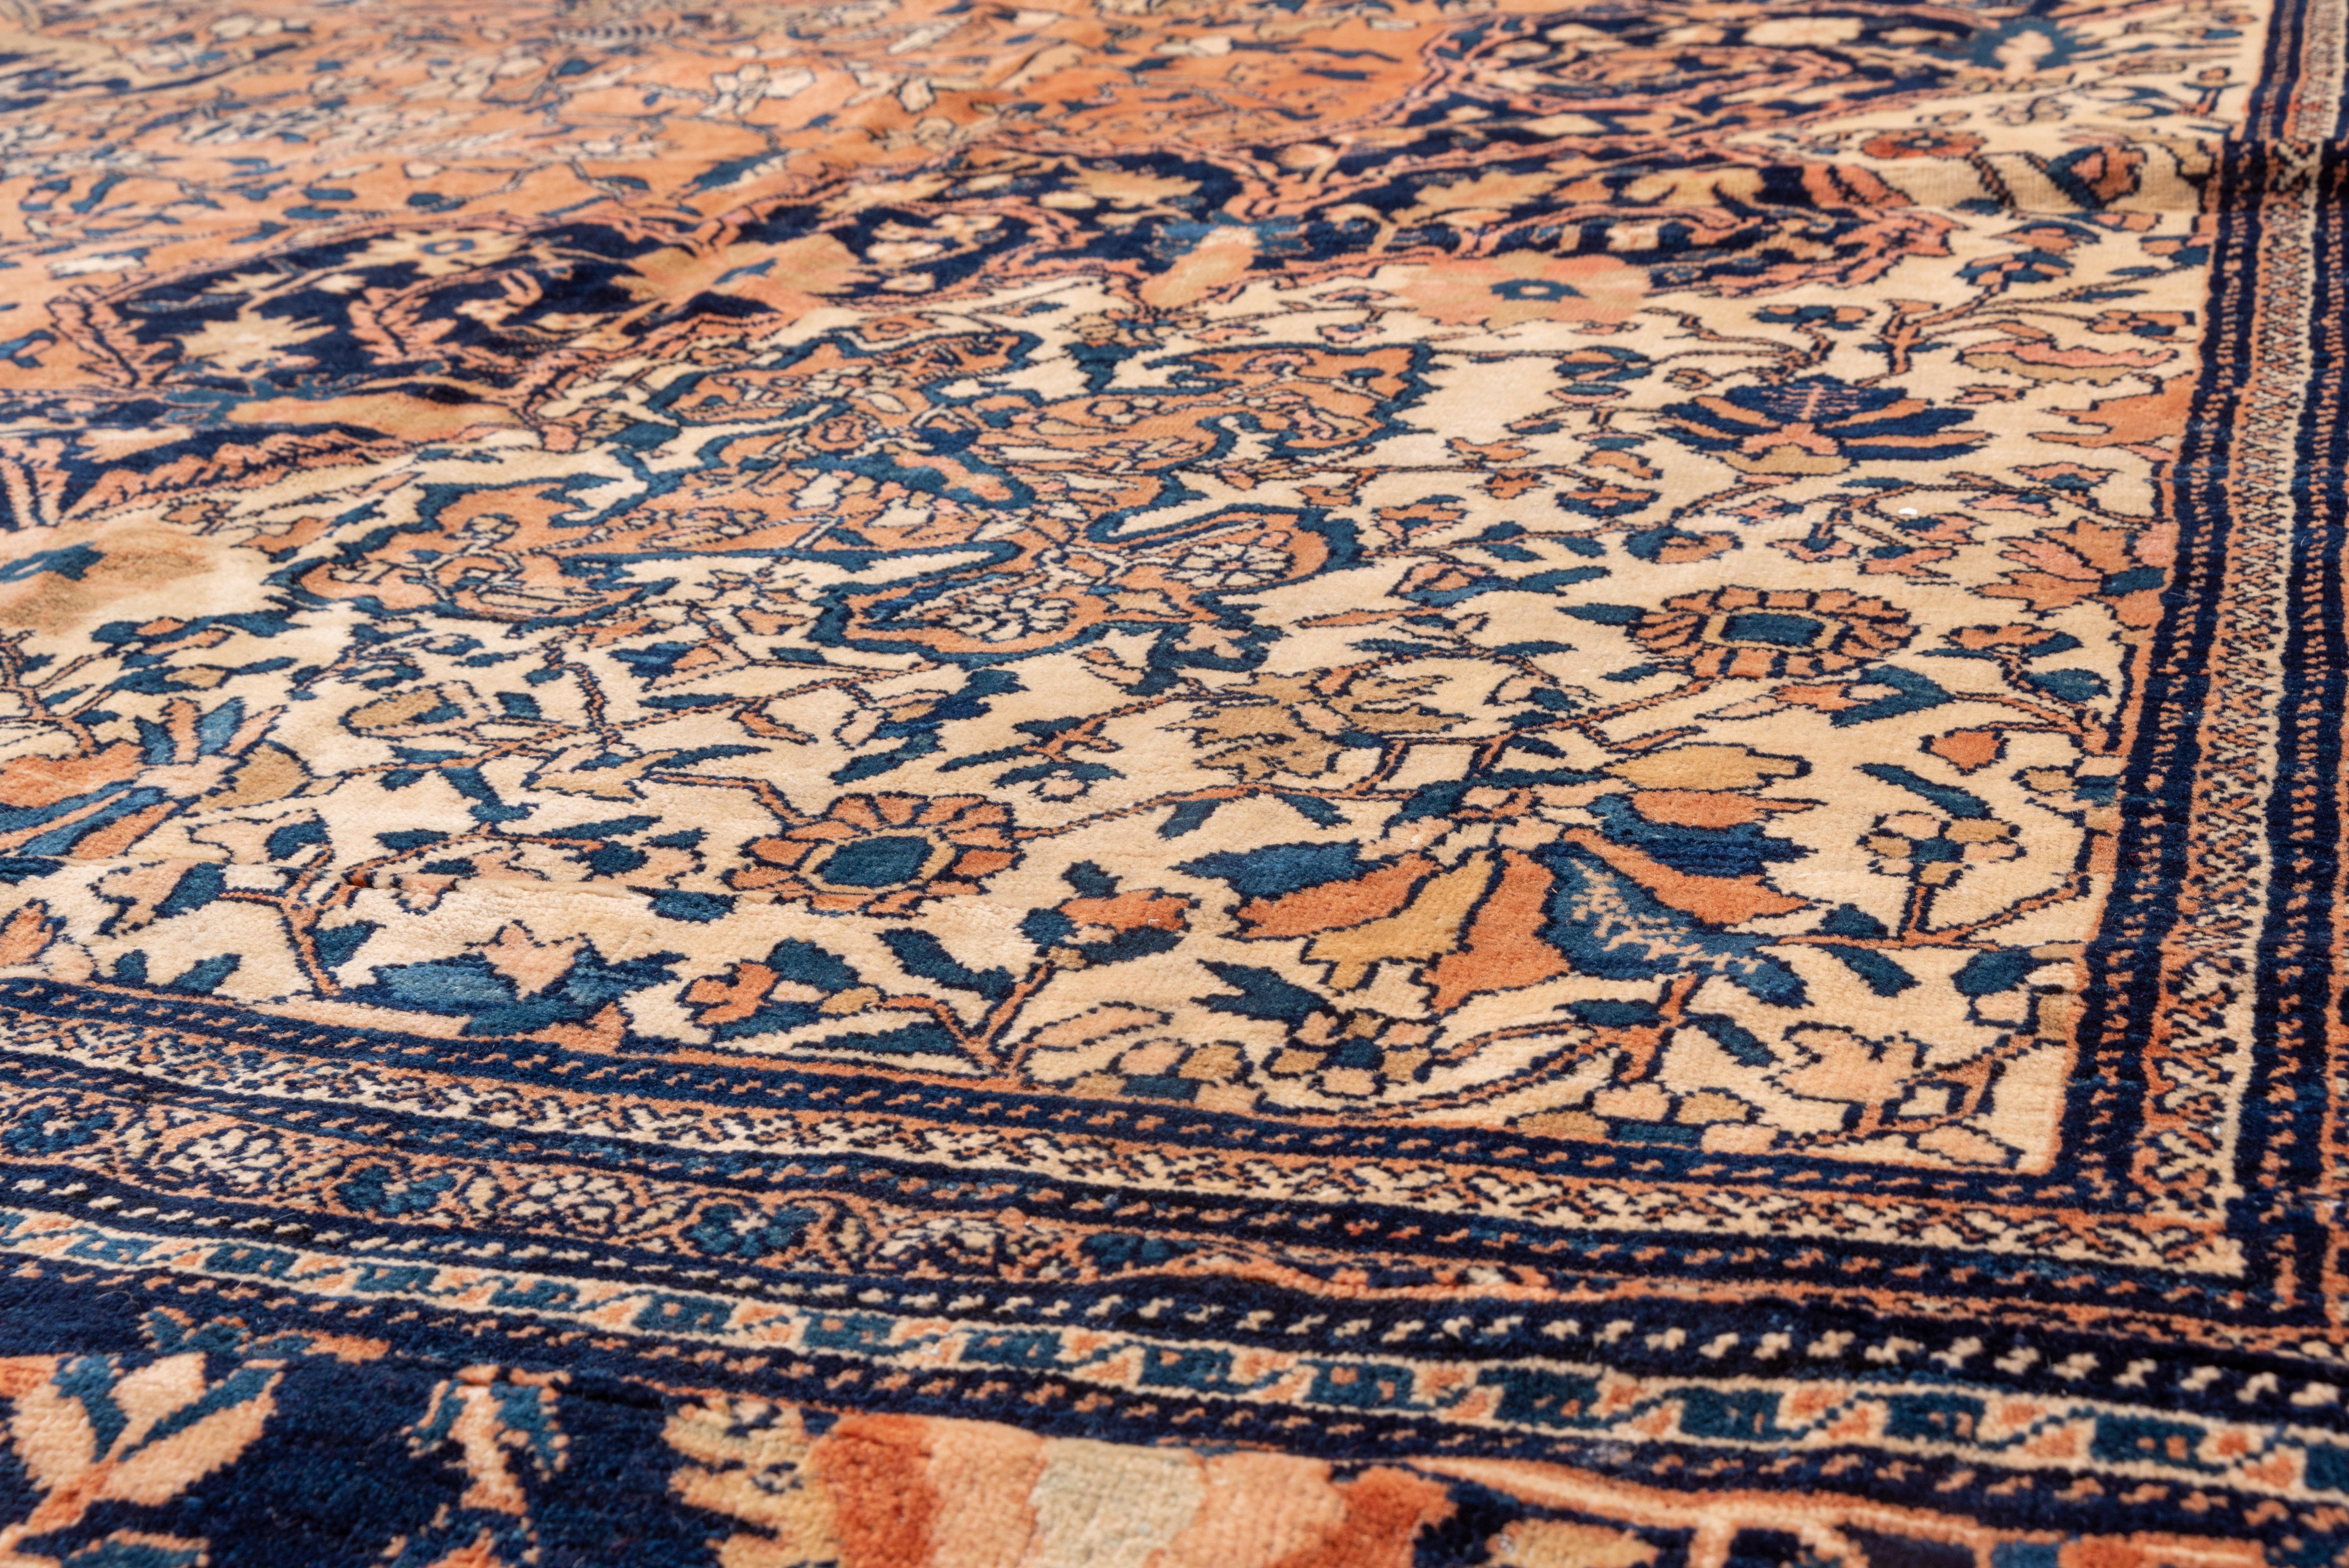 Dies ist ein schönes Beispiel für die rustikalen Teppiche aus dem Arak-Gebiet in Westpersien, die nach den höchsten städtischen Standards hergestellt wurden. Der hellrosafarbene Grund ist symmetrisch mit einem kleinen Blumen- und Weinrebenmuster